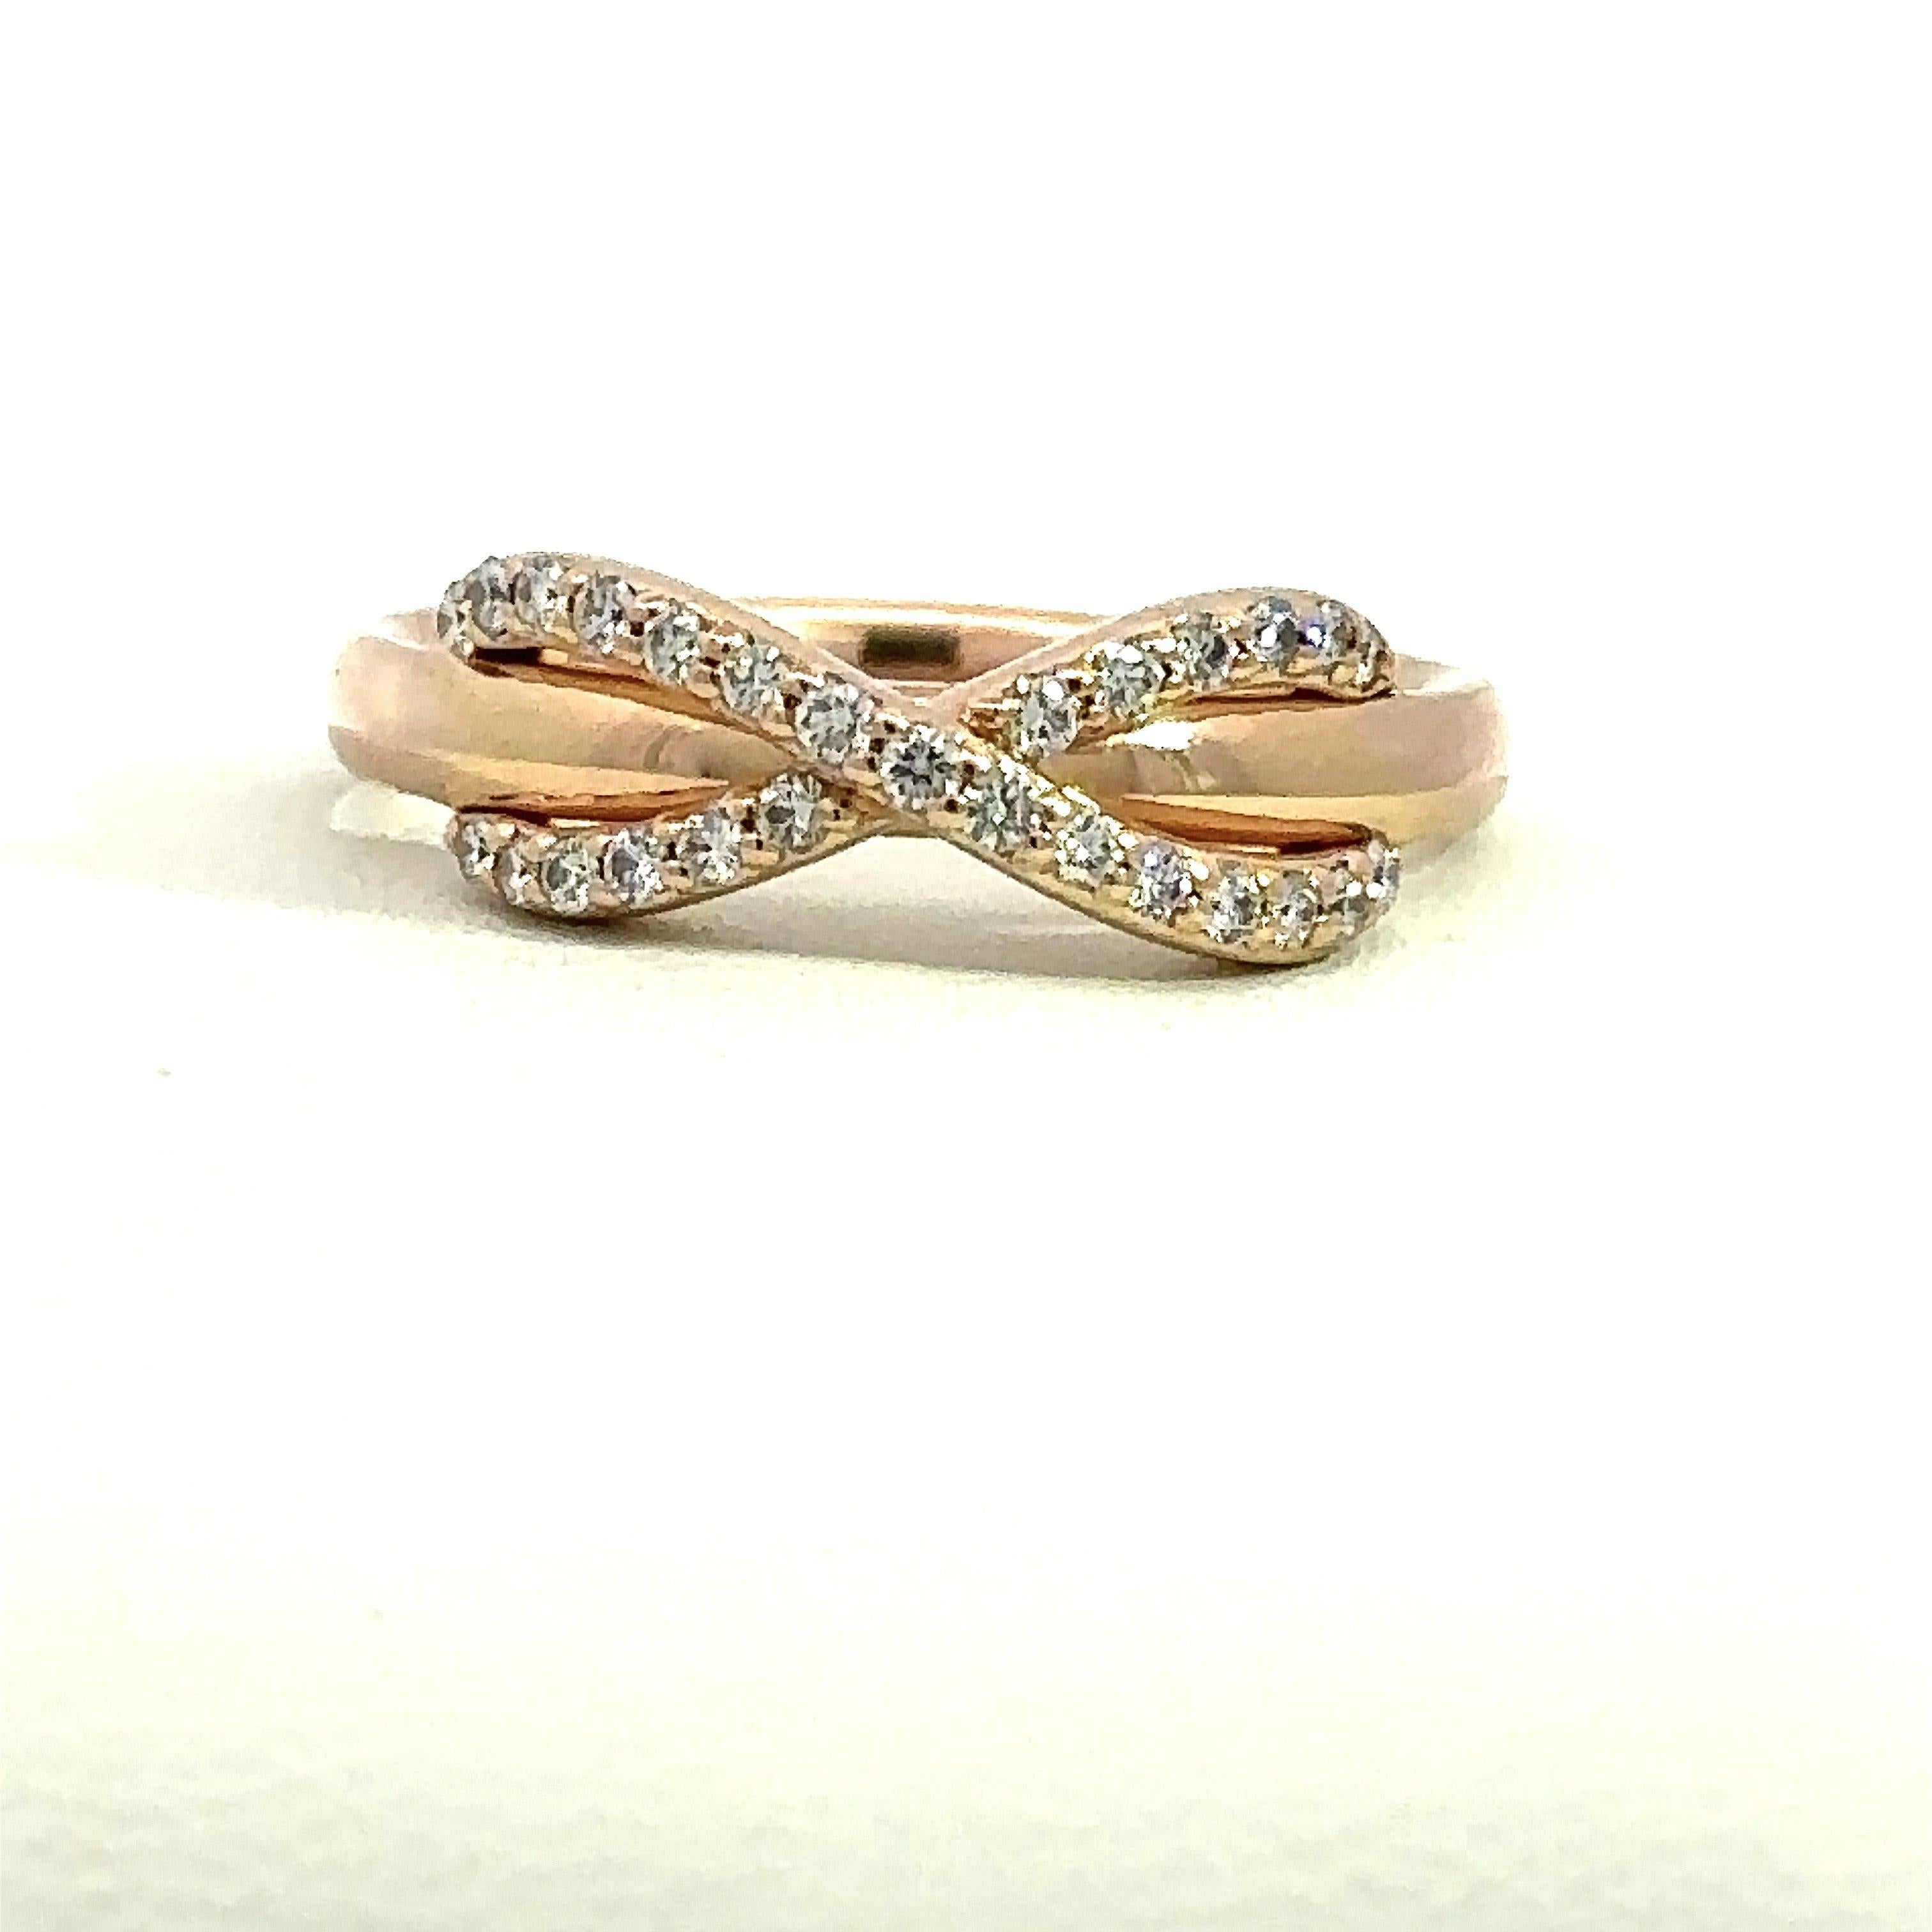 Tiffany & Co. Bague Infinity en or rose 18KT avec vingt-sept diamants pesant environ .16CT. La bague est estampillée AT&T. AU750 Italie. L'anneau mesure 5,7 mm à son point le plus large et se rétrécit à 2,3 mm. La bague est une taille 5 et peut être